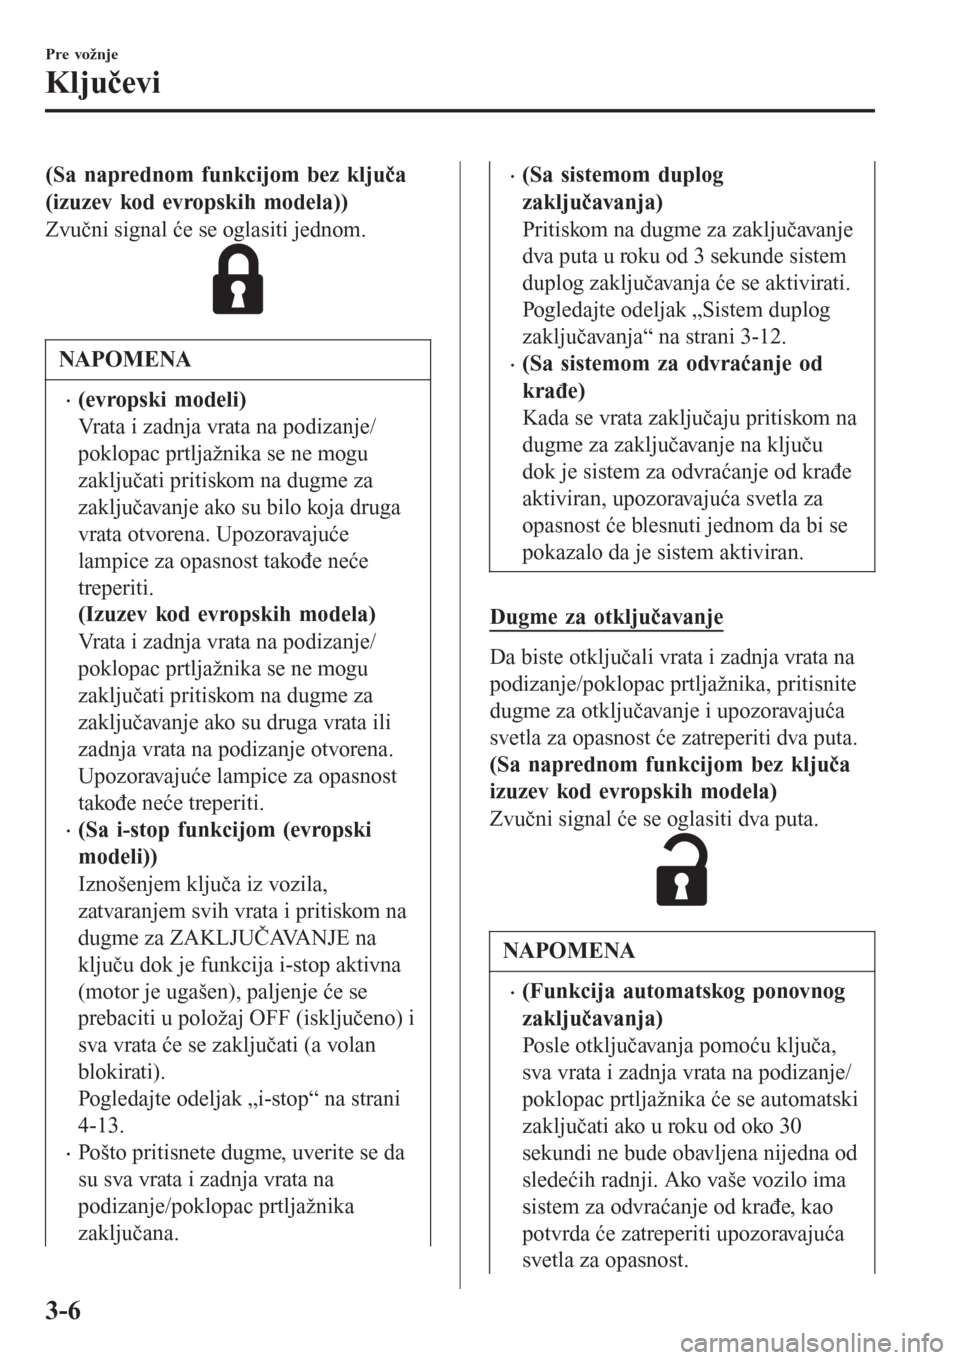 MAZDA MODEL 3 HATCHBACK 2015  Korisničko uputstvo (in Serbian) (Sa naprednom funkcijom bez ključa
(izuzev kod evropskih modela))
Zvučni signal će se oglasiti jednom.
NAPOMENA
•(evropski modeli)
Vrata i zadnja vrata na podizanje/
poklopac prtljažnika se ne m